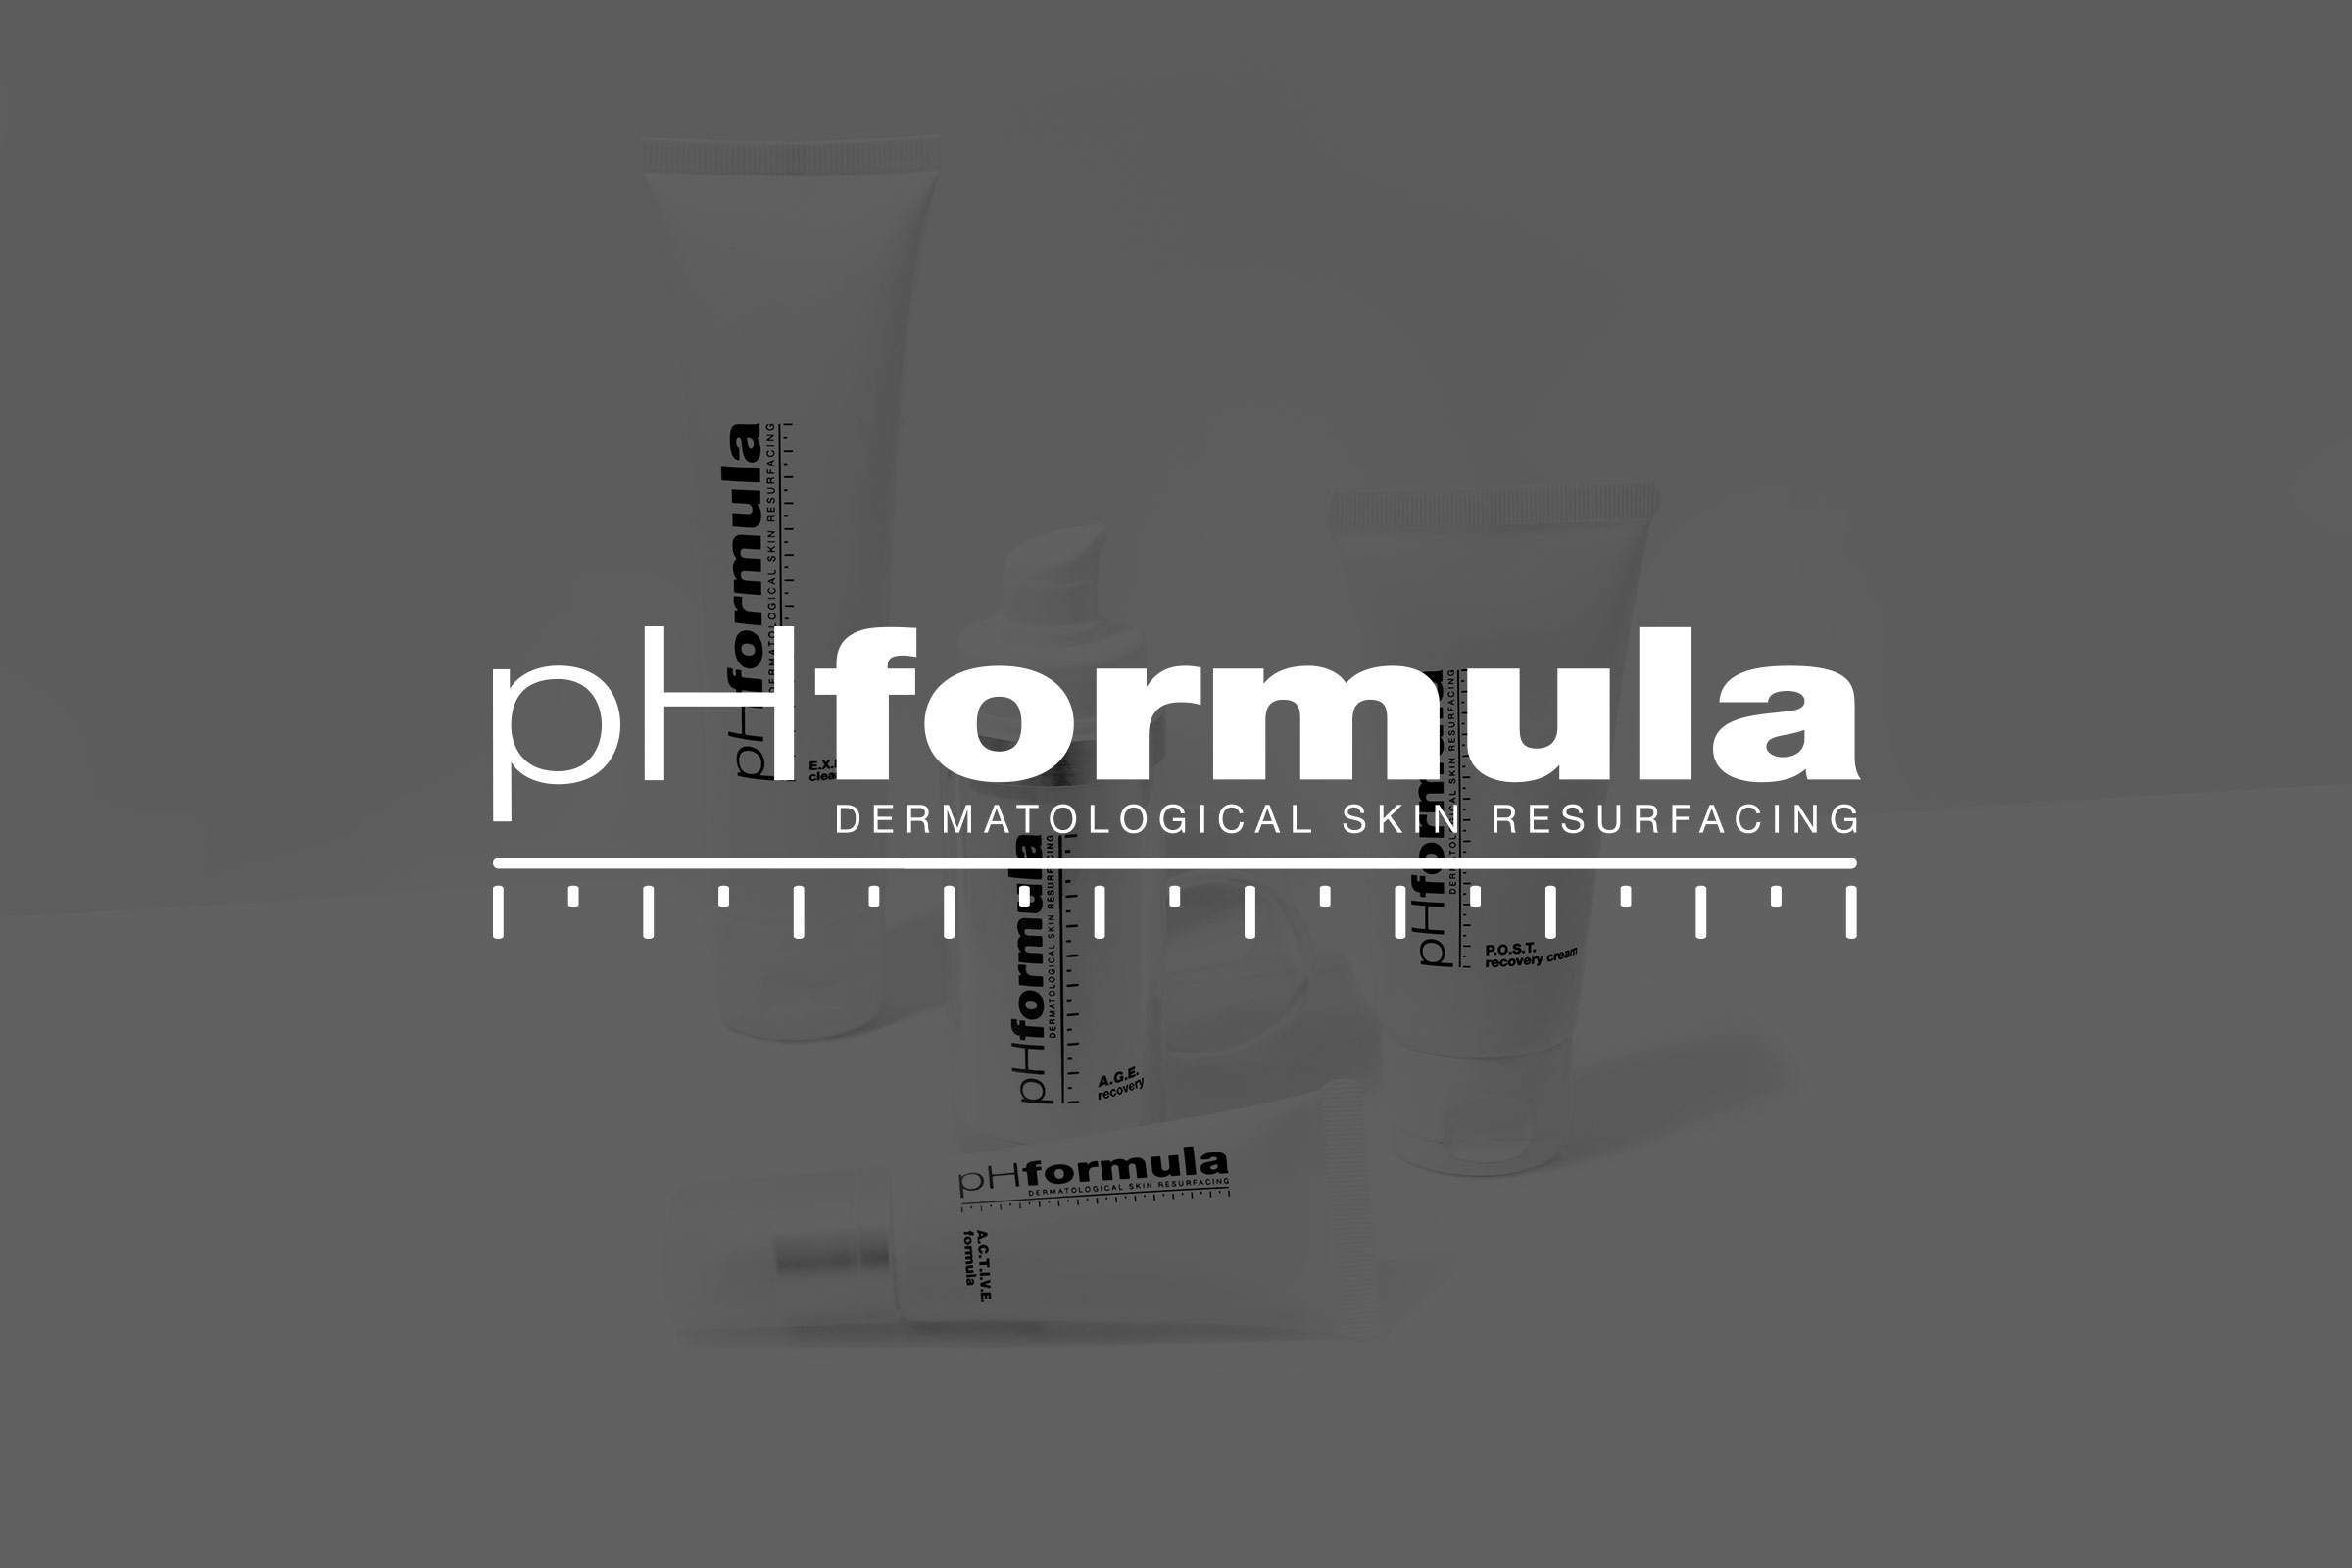 (c) Ph-formula.nl